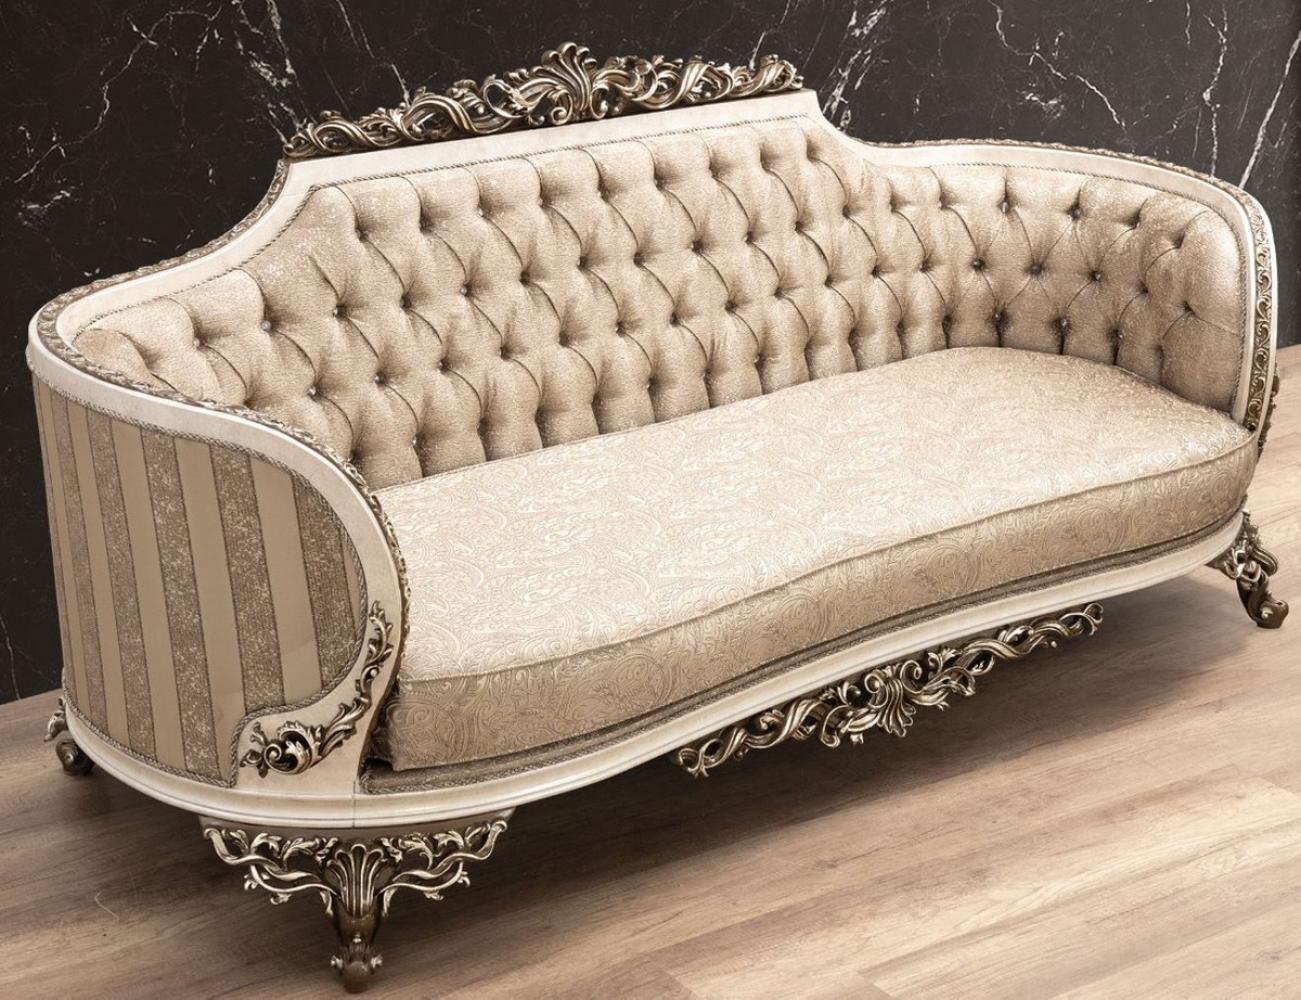 Casa Padrino Luxus Barock Sofa Beige / Cremefarben / Braun / Gold - Prunkvolles Wohnzimmer Sofa mit elegantem Muster - Barock Wohnzimmer Möbel Bild 1